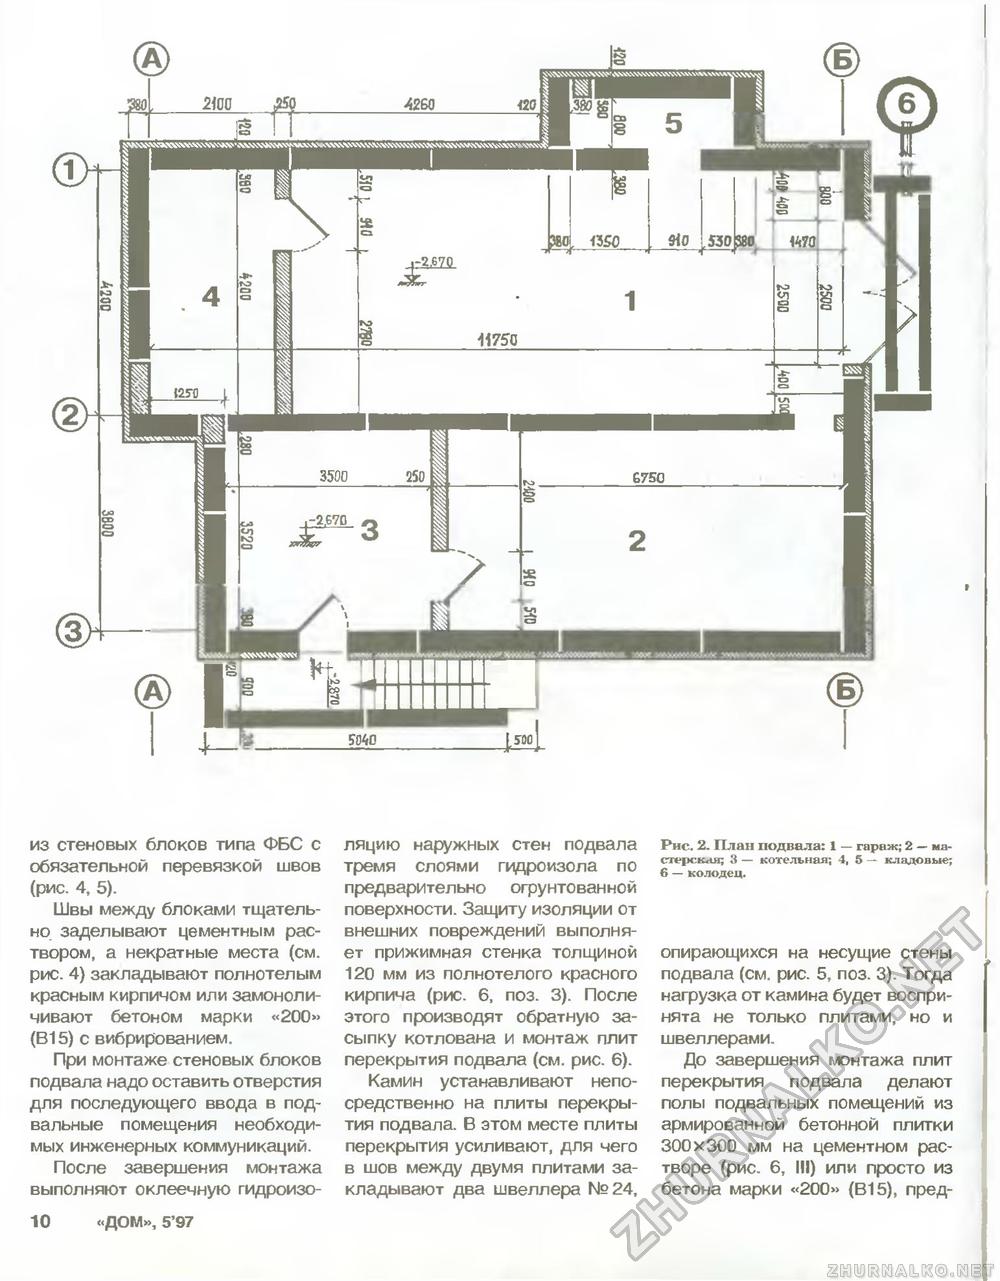 Дом 1997-05, страница 10